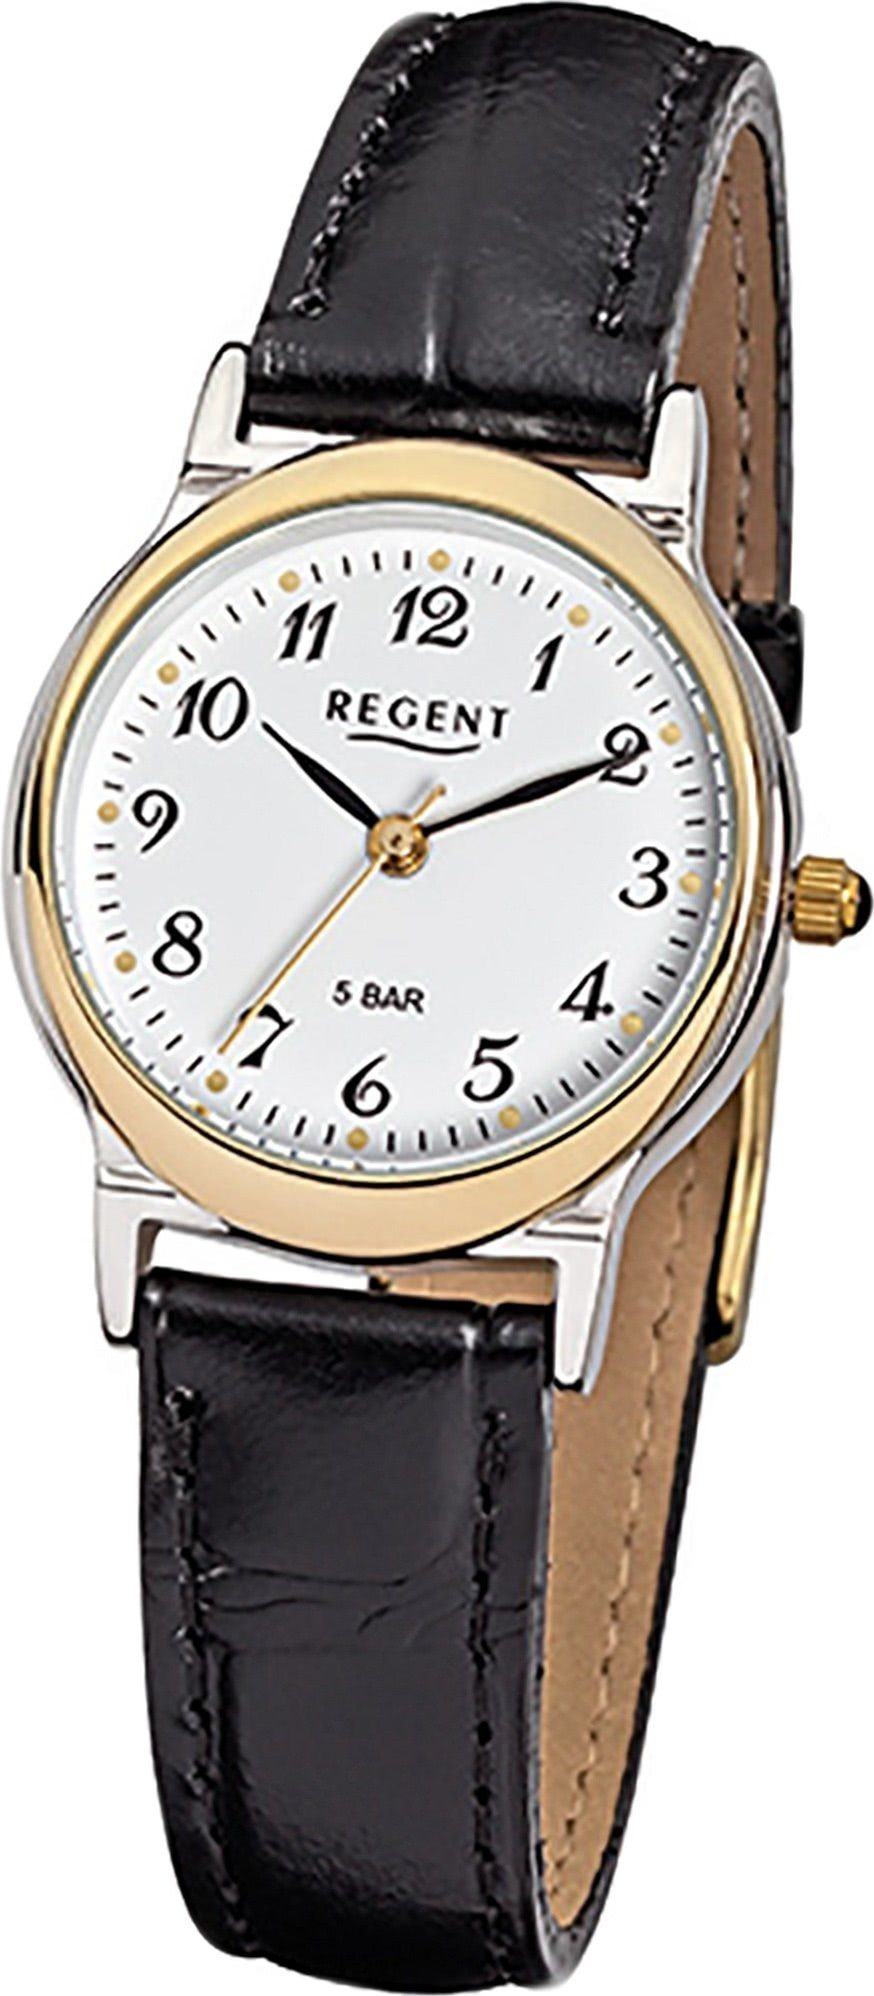 Regent Quarzuhr Regent Leder Damen Uhr F-014 Quarzuhr, Damenuhr Lederarmband schwarz, rundes Gehäuse, klein (ca. 27mm)